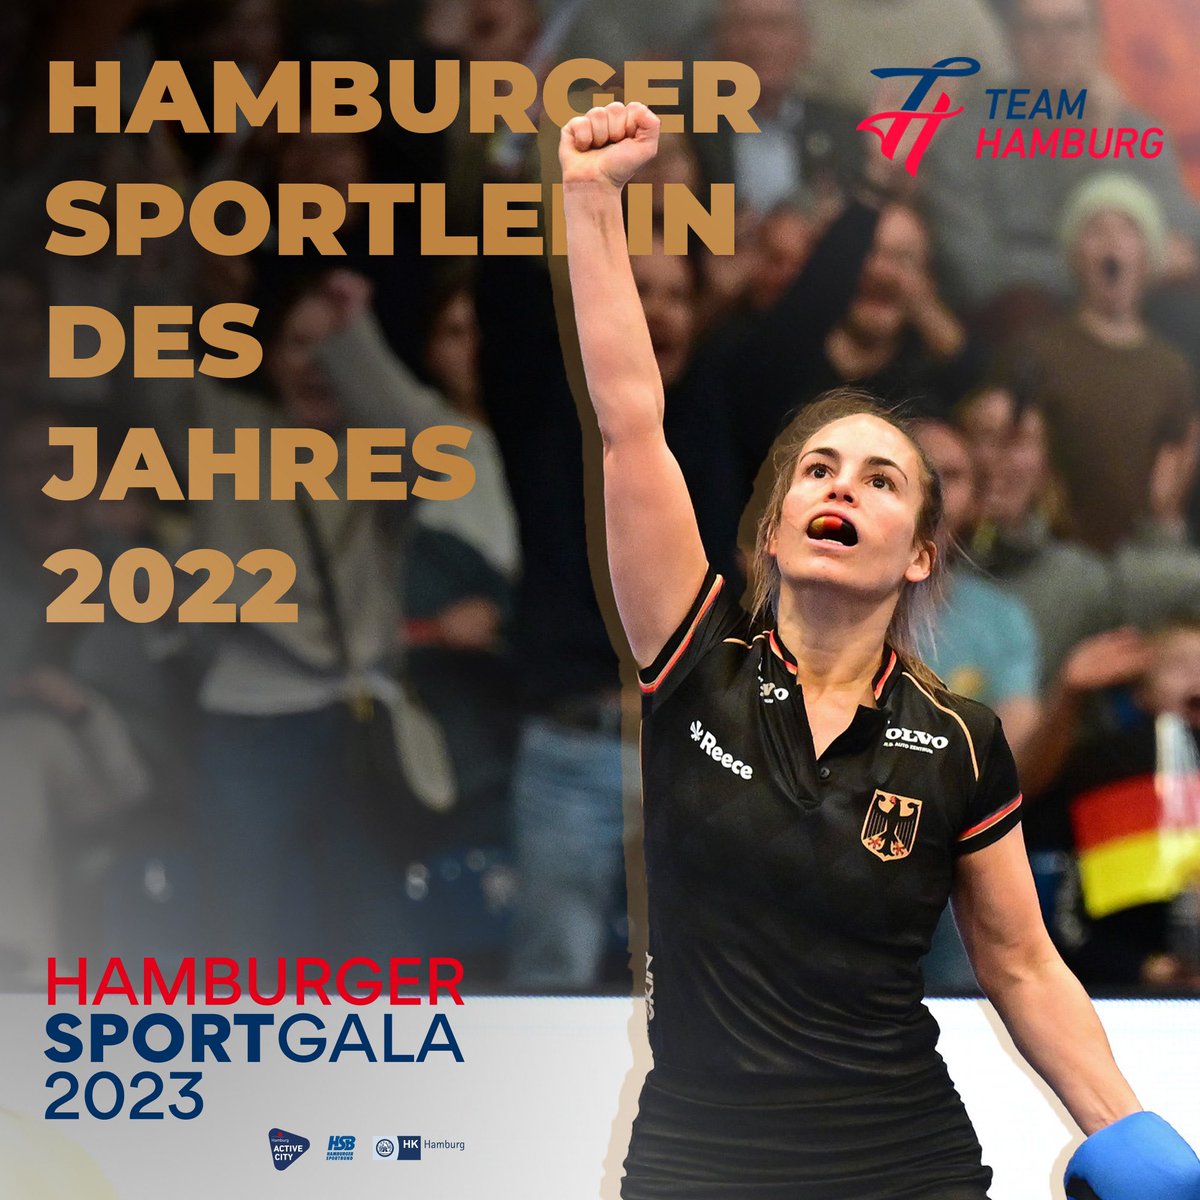 Die ehemalige #TEAMHAMBURG Athletin Lisa Altenburg ist Hamburger Sportlerin des Jahres 2022!

Die Hockey-Spielerin wurde 2022 bei der EM in Hamburg Hallen-Europameisterin und erzielte die meisten Tore des Turniers.

Glückwunsch!

#hamburgersportgala #sportgala2023

Foto: Witters